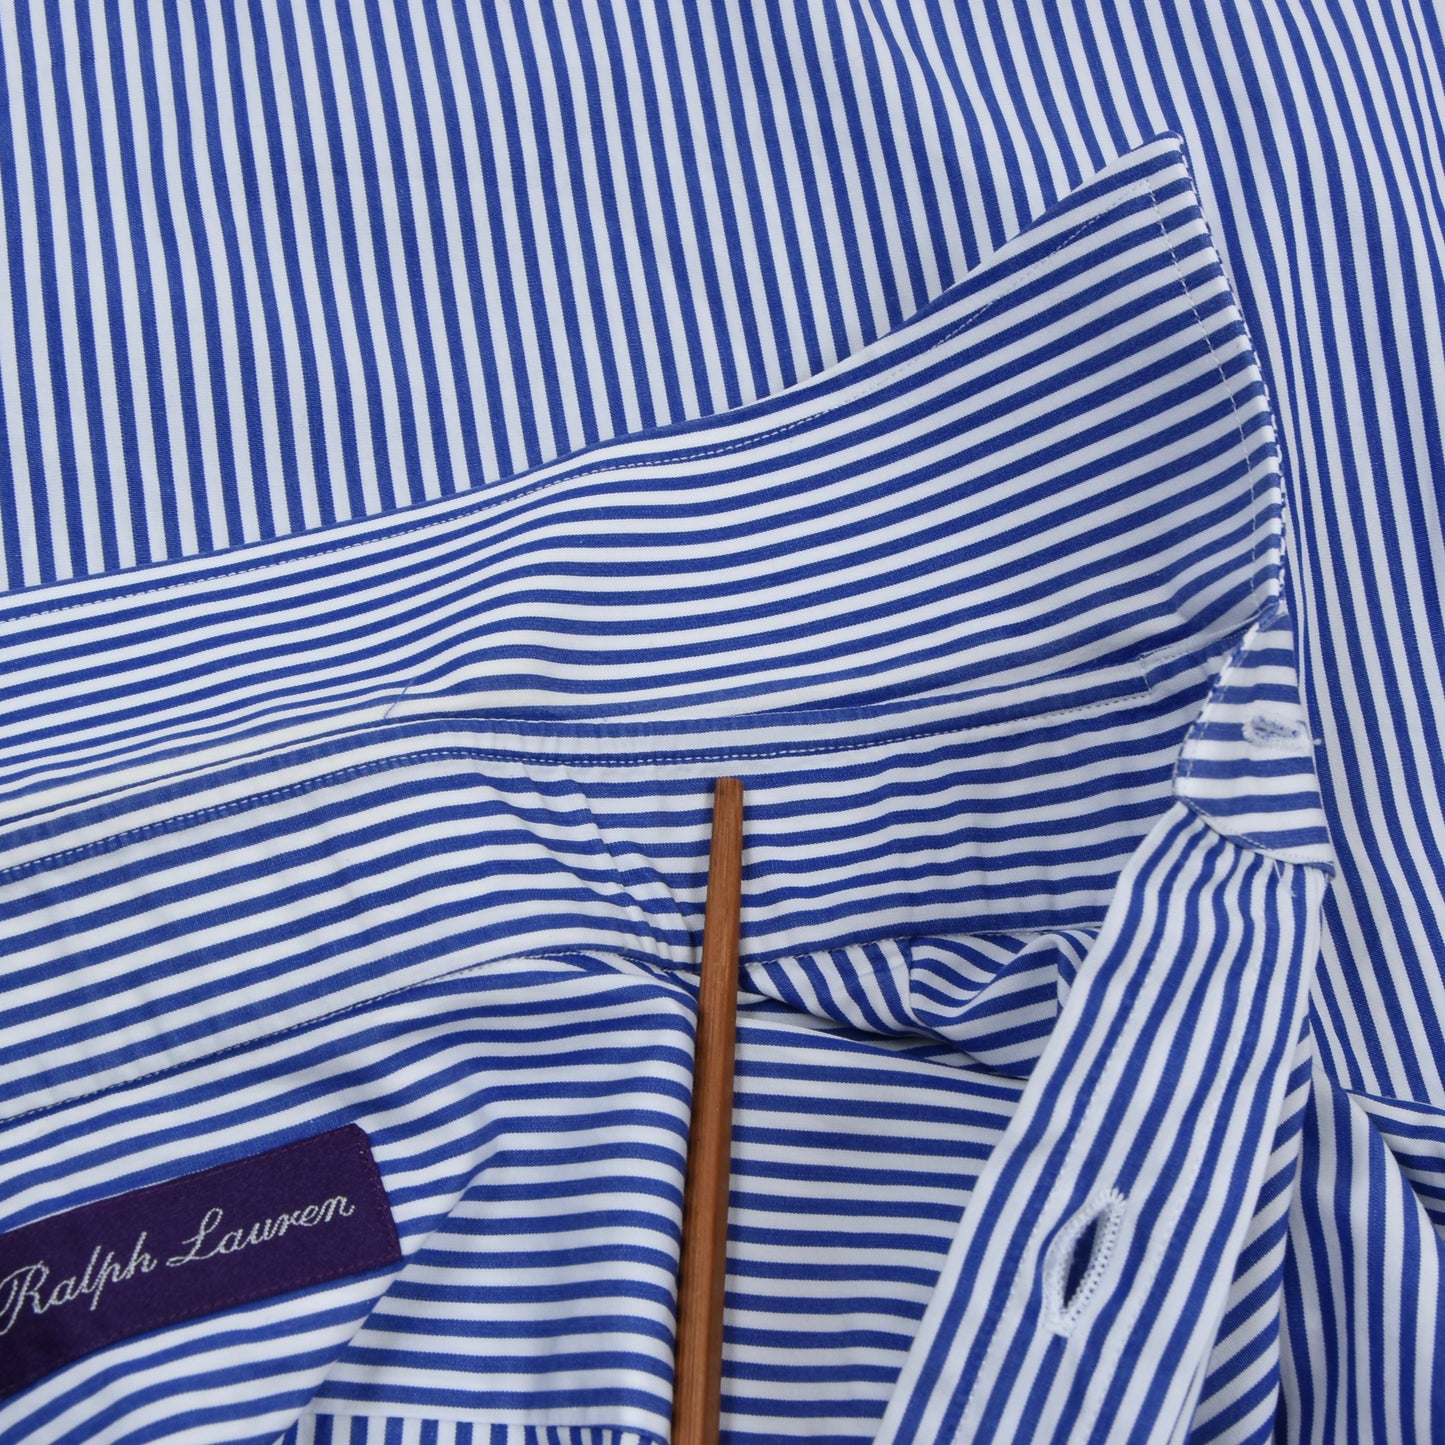 Ralph Lauren Purple Label Hemd Doppelmanschette Größe 16 1/2 - Streifen